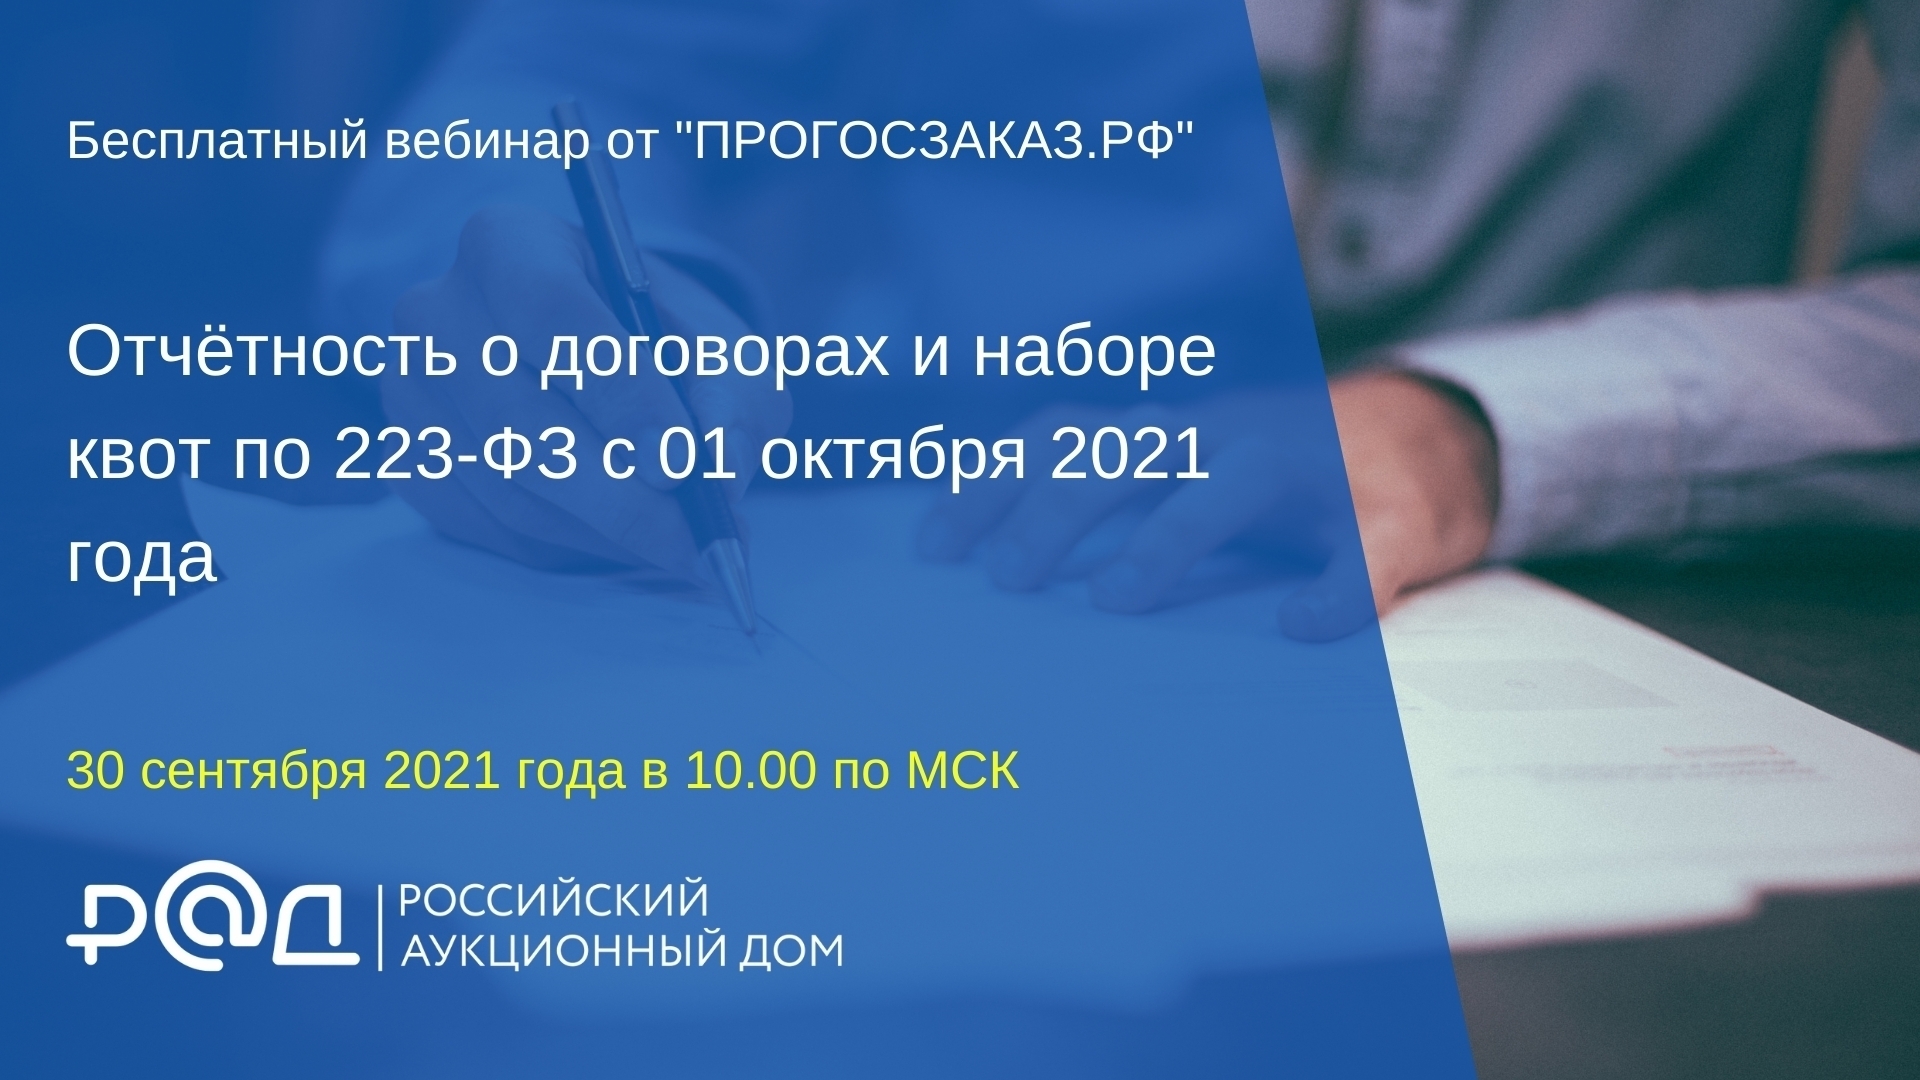 30 сентября 2021 года в 10:00 по МСК состоится вебинар на тему «Отчётность о договорах и наборе квот по 223-ФЗ с 01 октября 2021 года»